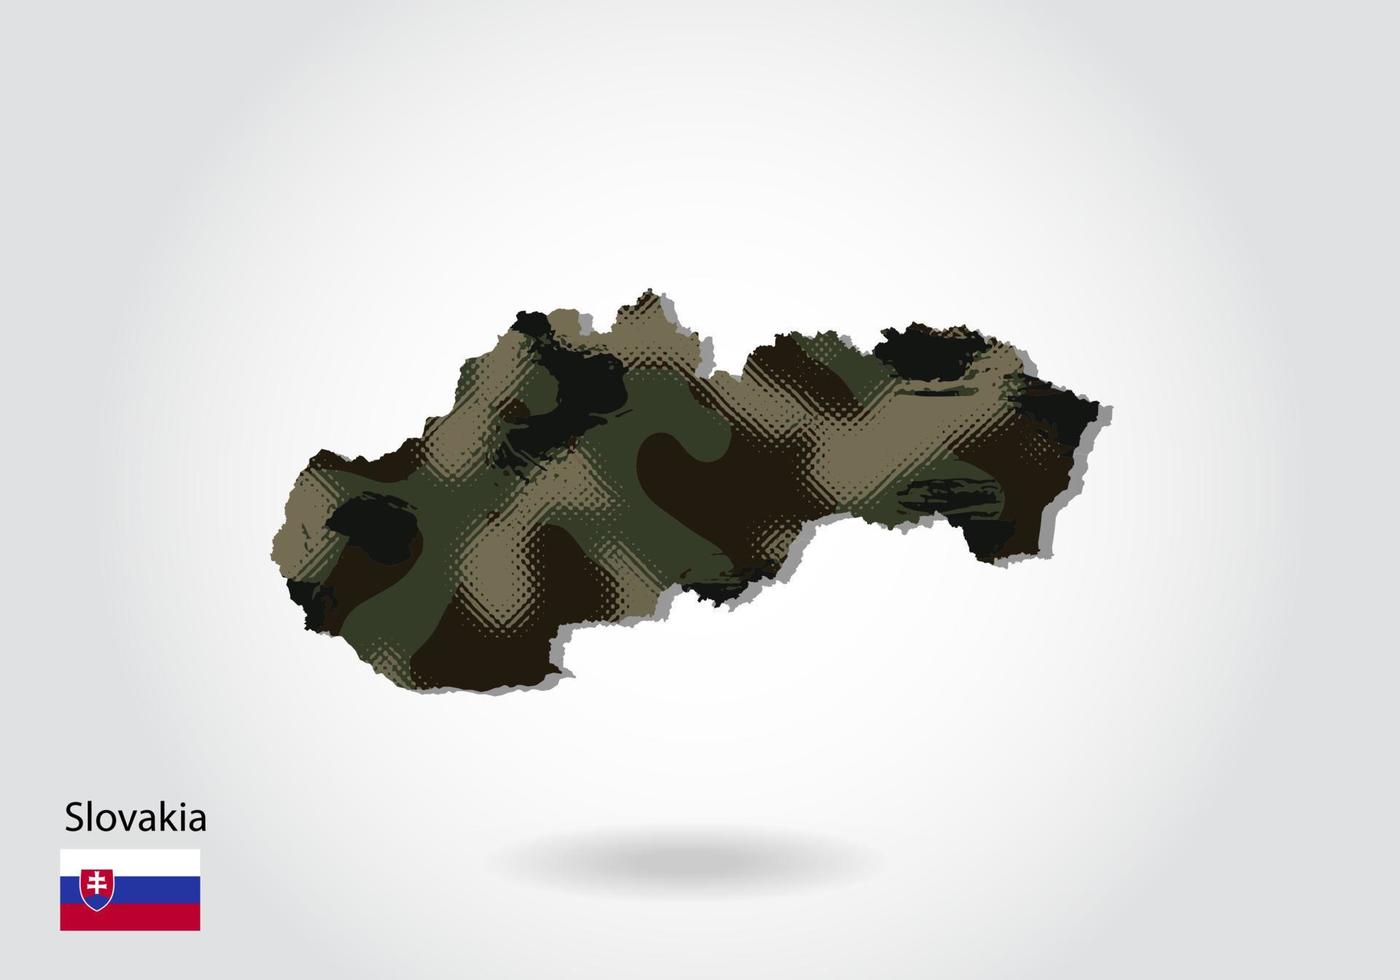 slovakien karta med kamouflagemönster, skog - grön struktur i kartan. militärt koncept för armé, soldat och krig. vapensköld, flagga. vektor